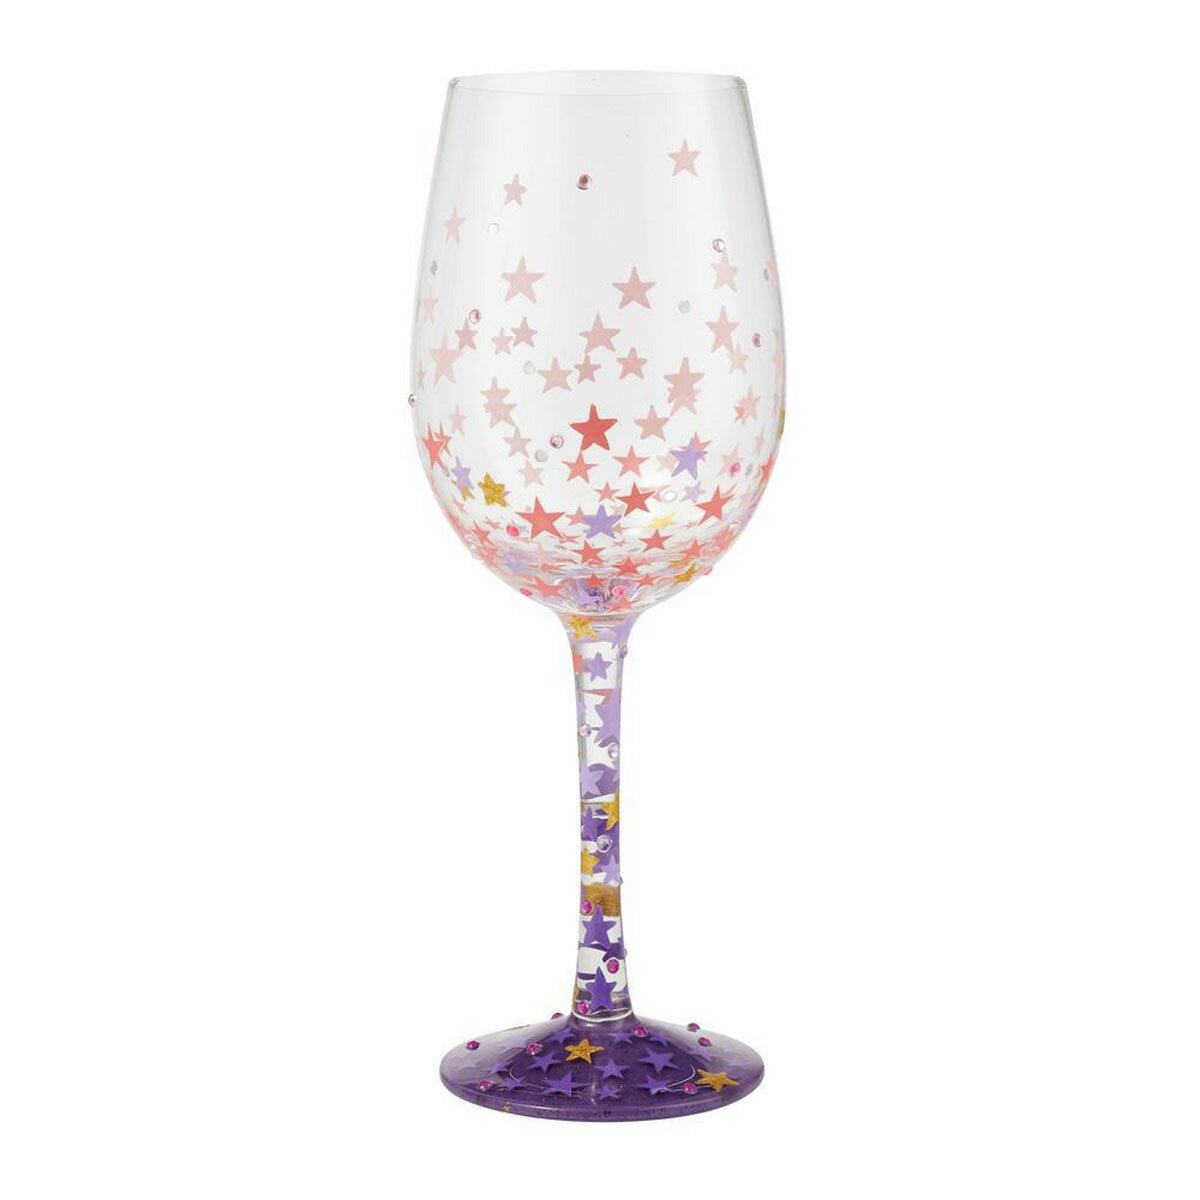 ロリータ LOLITA グラス ワイングラス 食器 コップ 6010157 Stars-a-Million スターズアミリオン 星 パープル系マルチカラー